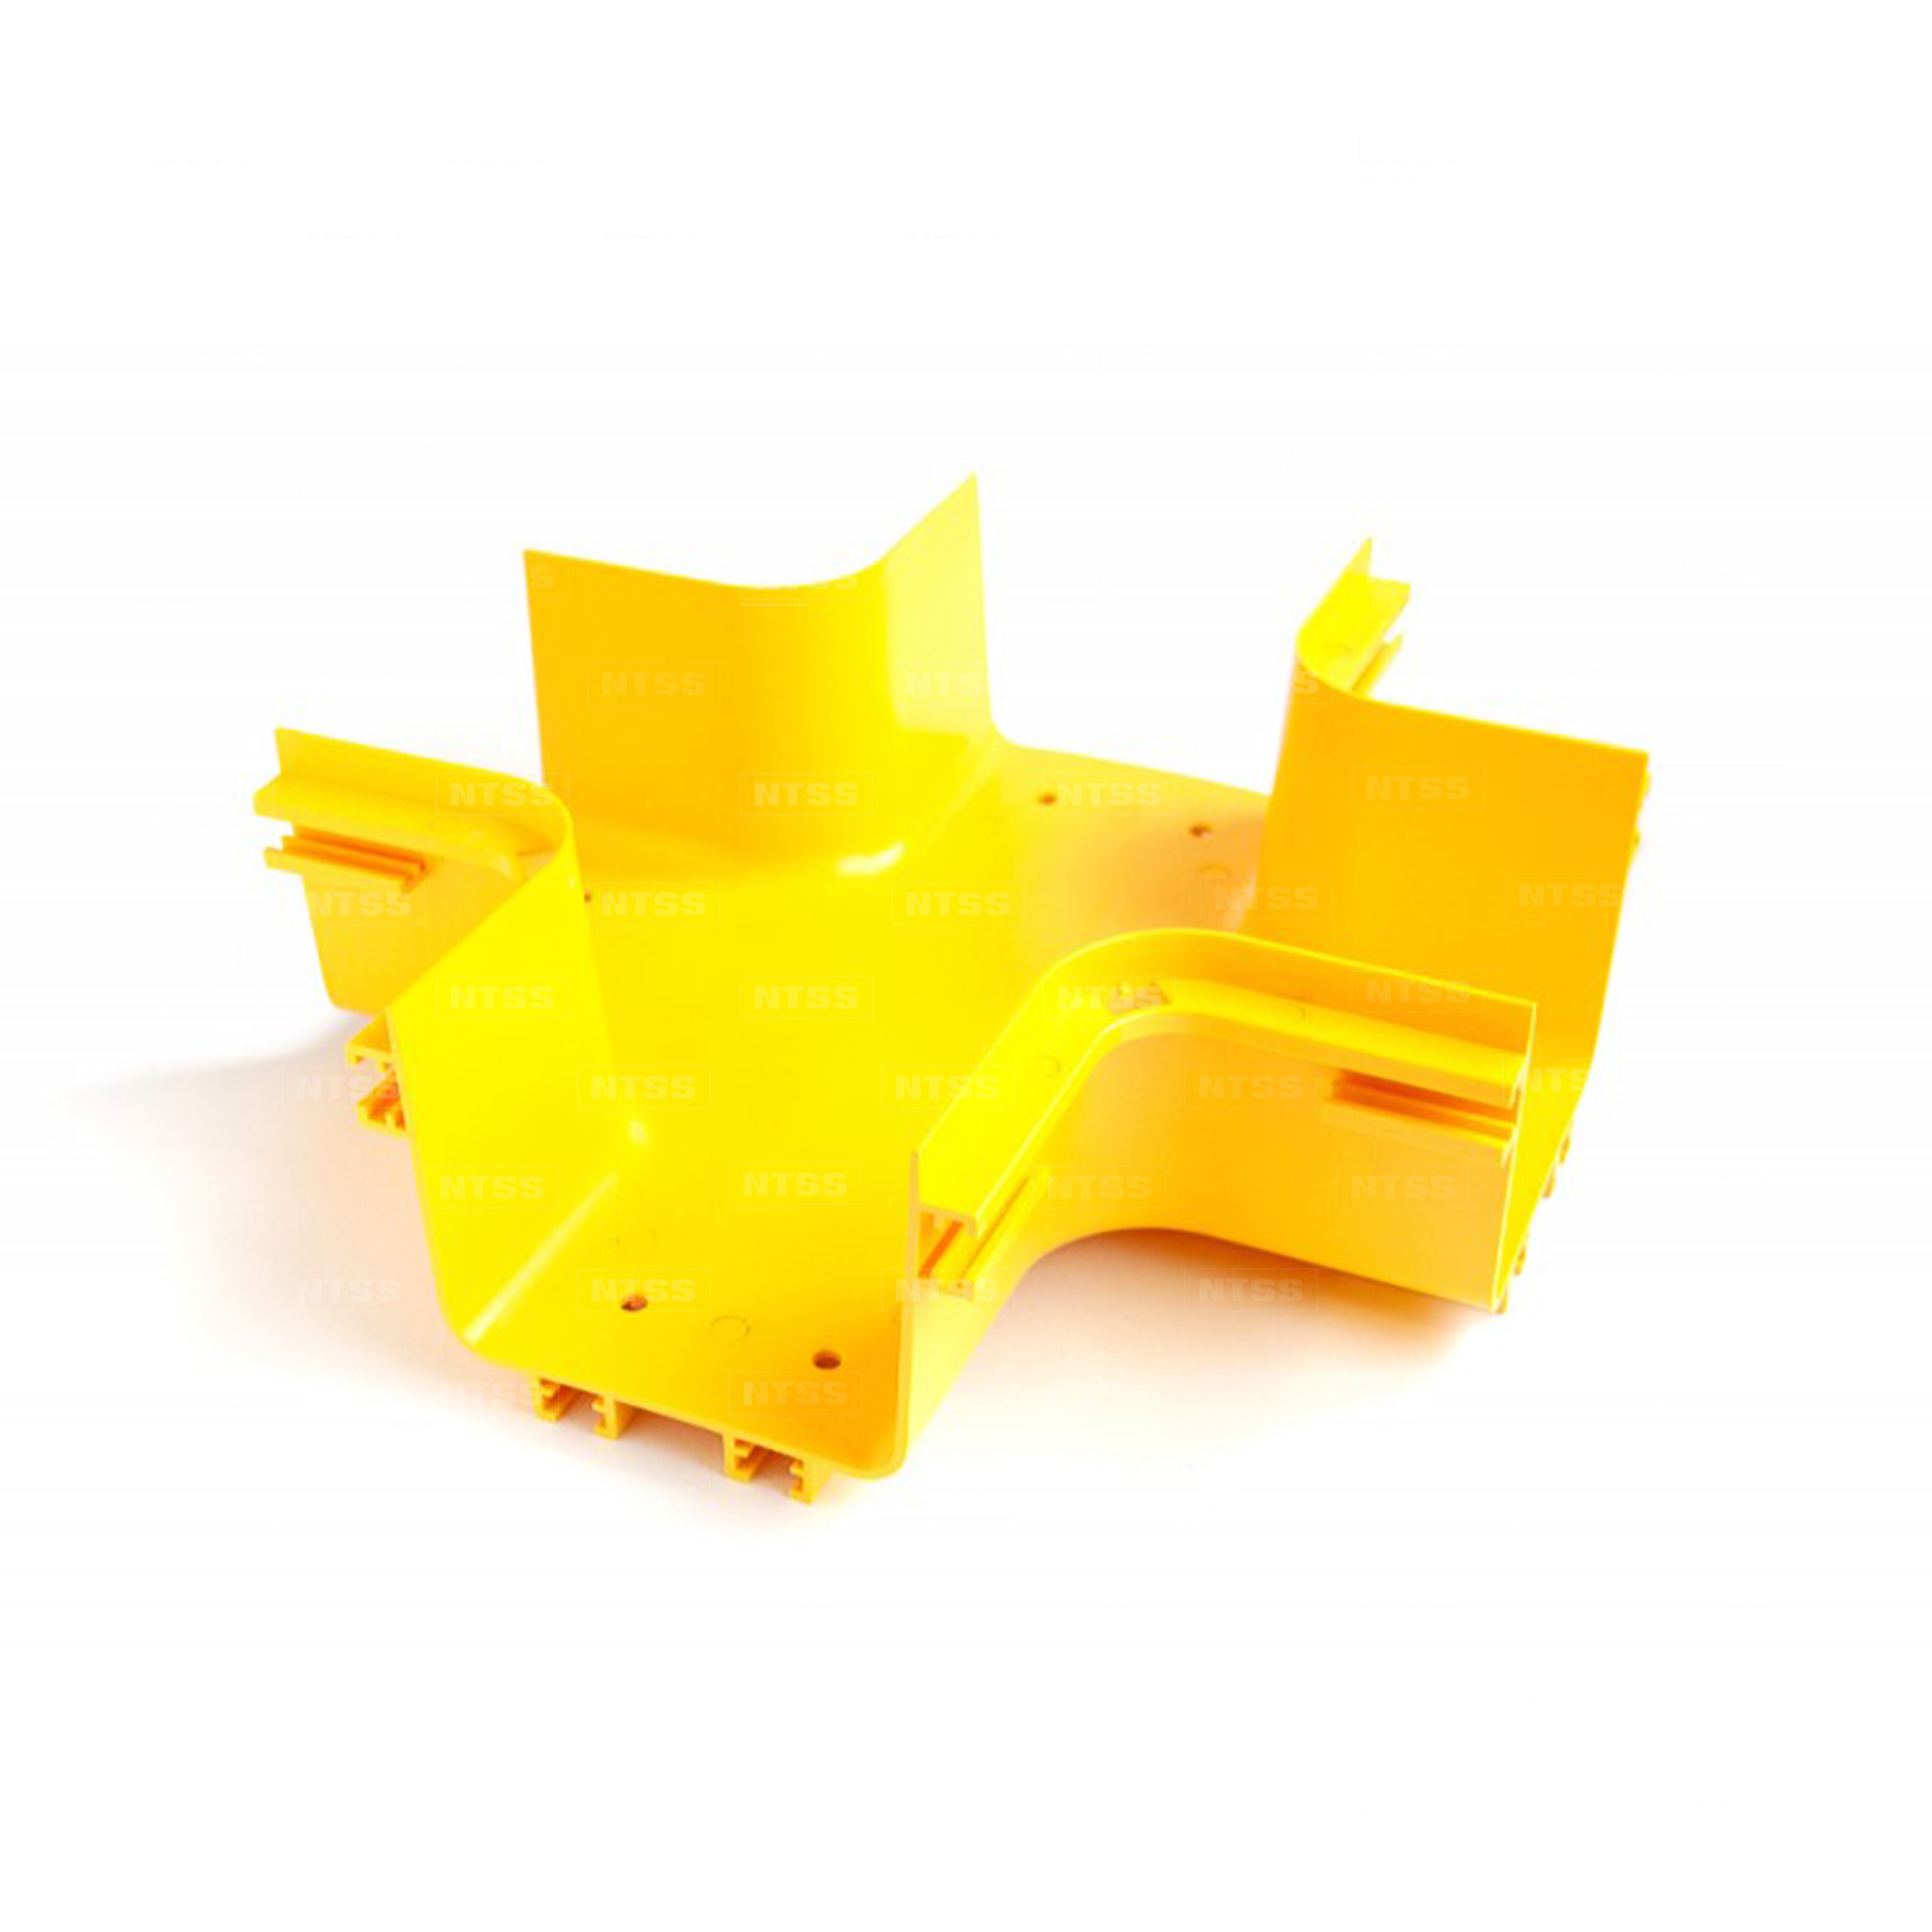 Х-соединитель оптического лотка 120x100 мм, желтый